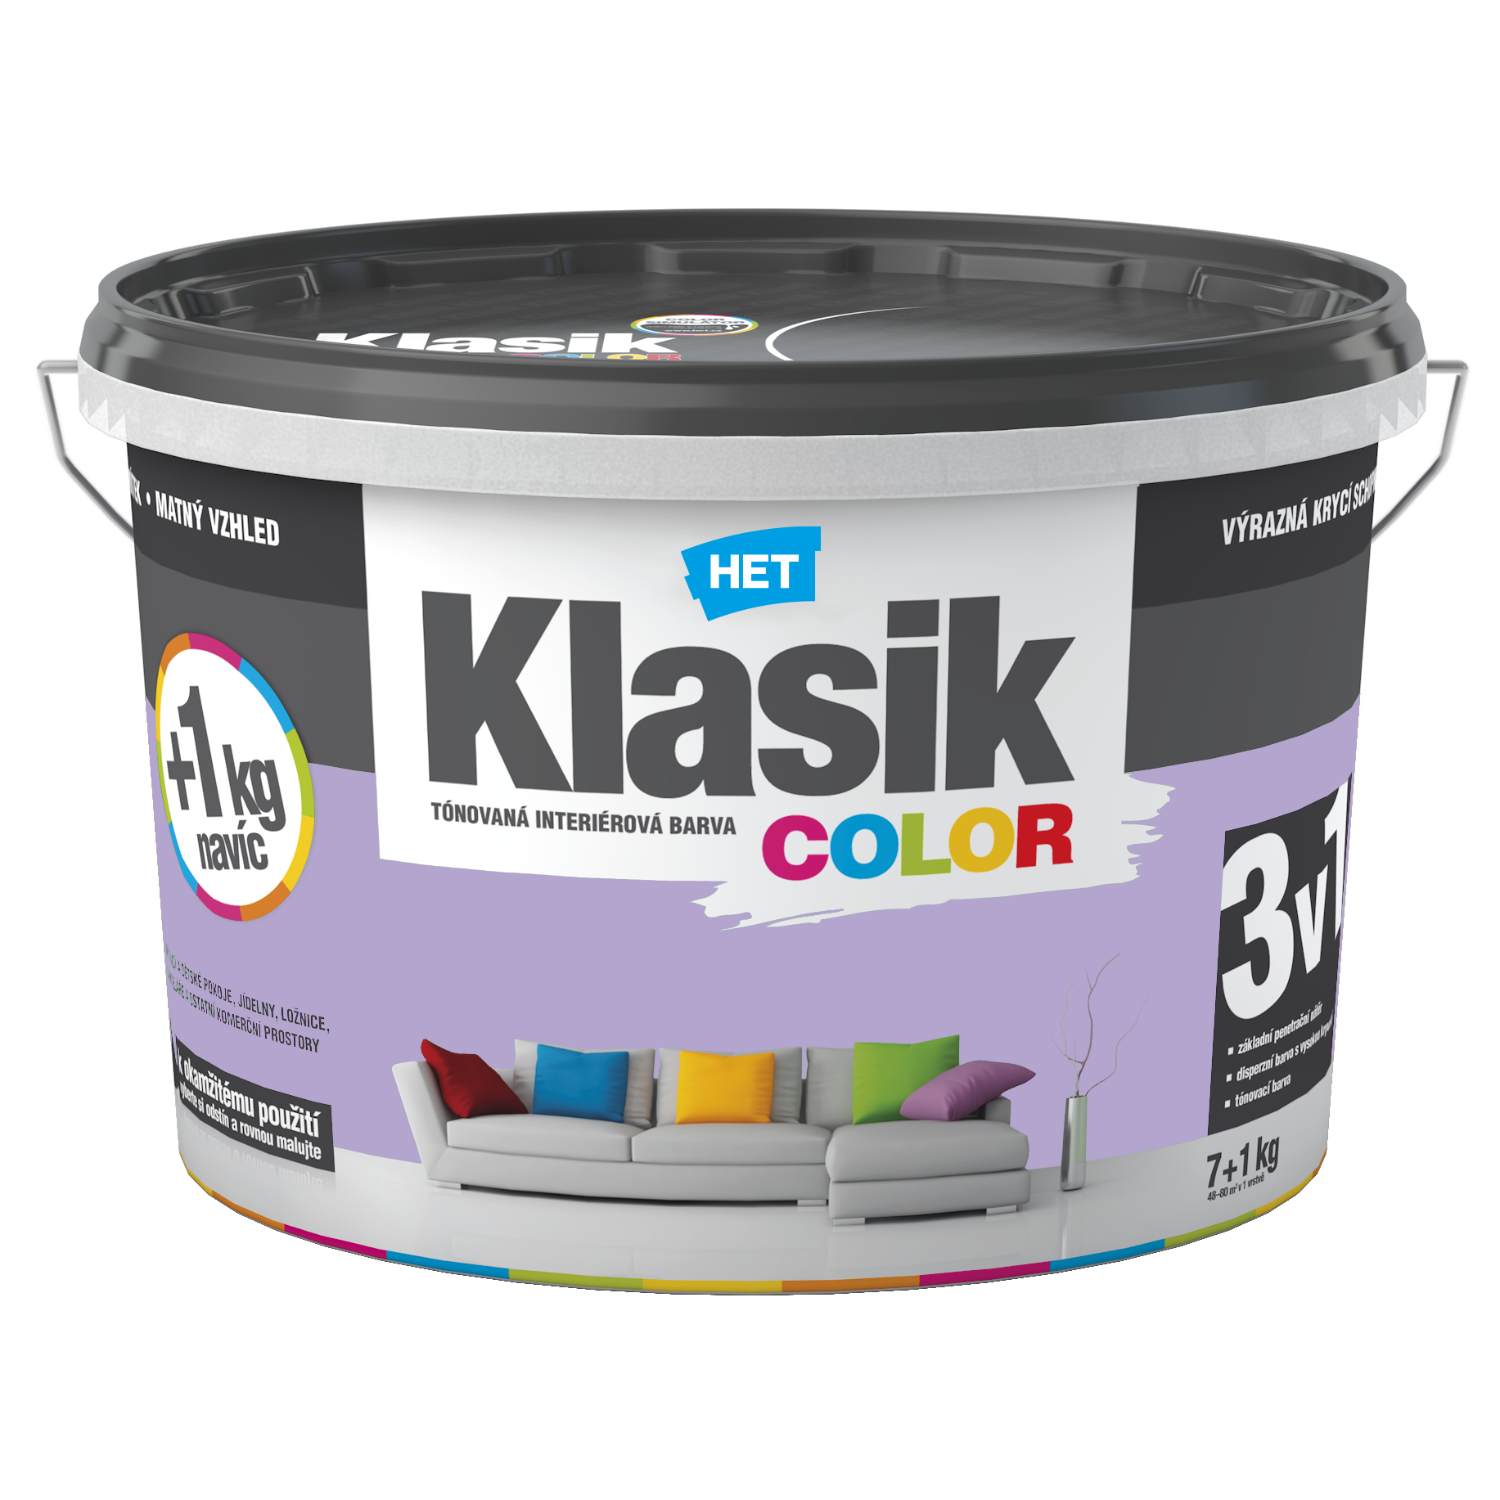 HET Klasik COLOR tónovaná interiérová akrylátová disperzná oteruvzdorná farba 7 kg + 1 kg zdarma, KC0317 - purpurový